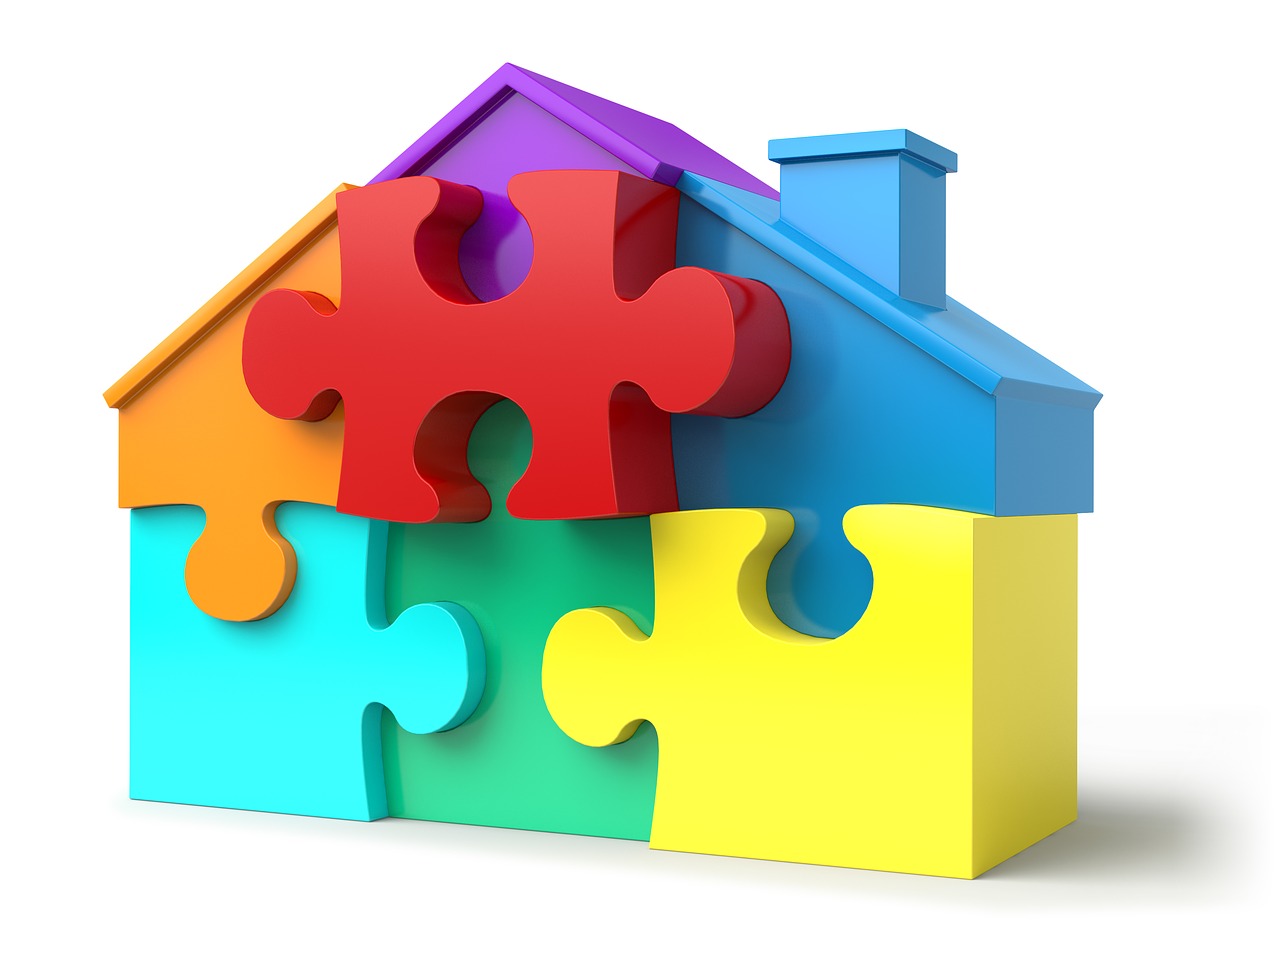 Quelles sont les principales étapes d’une acquisition immobilière dans un projet neuf ?